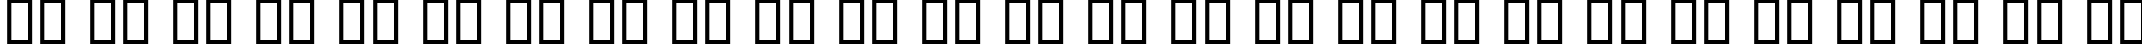 Пример написания английского алфавита шрифтом B Fantezy